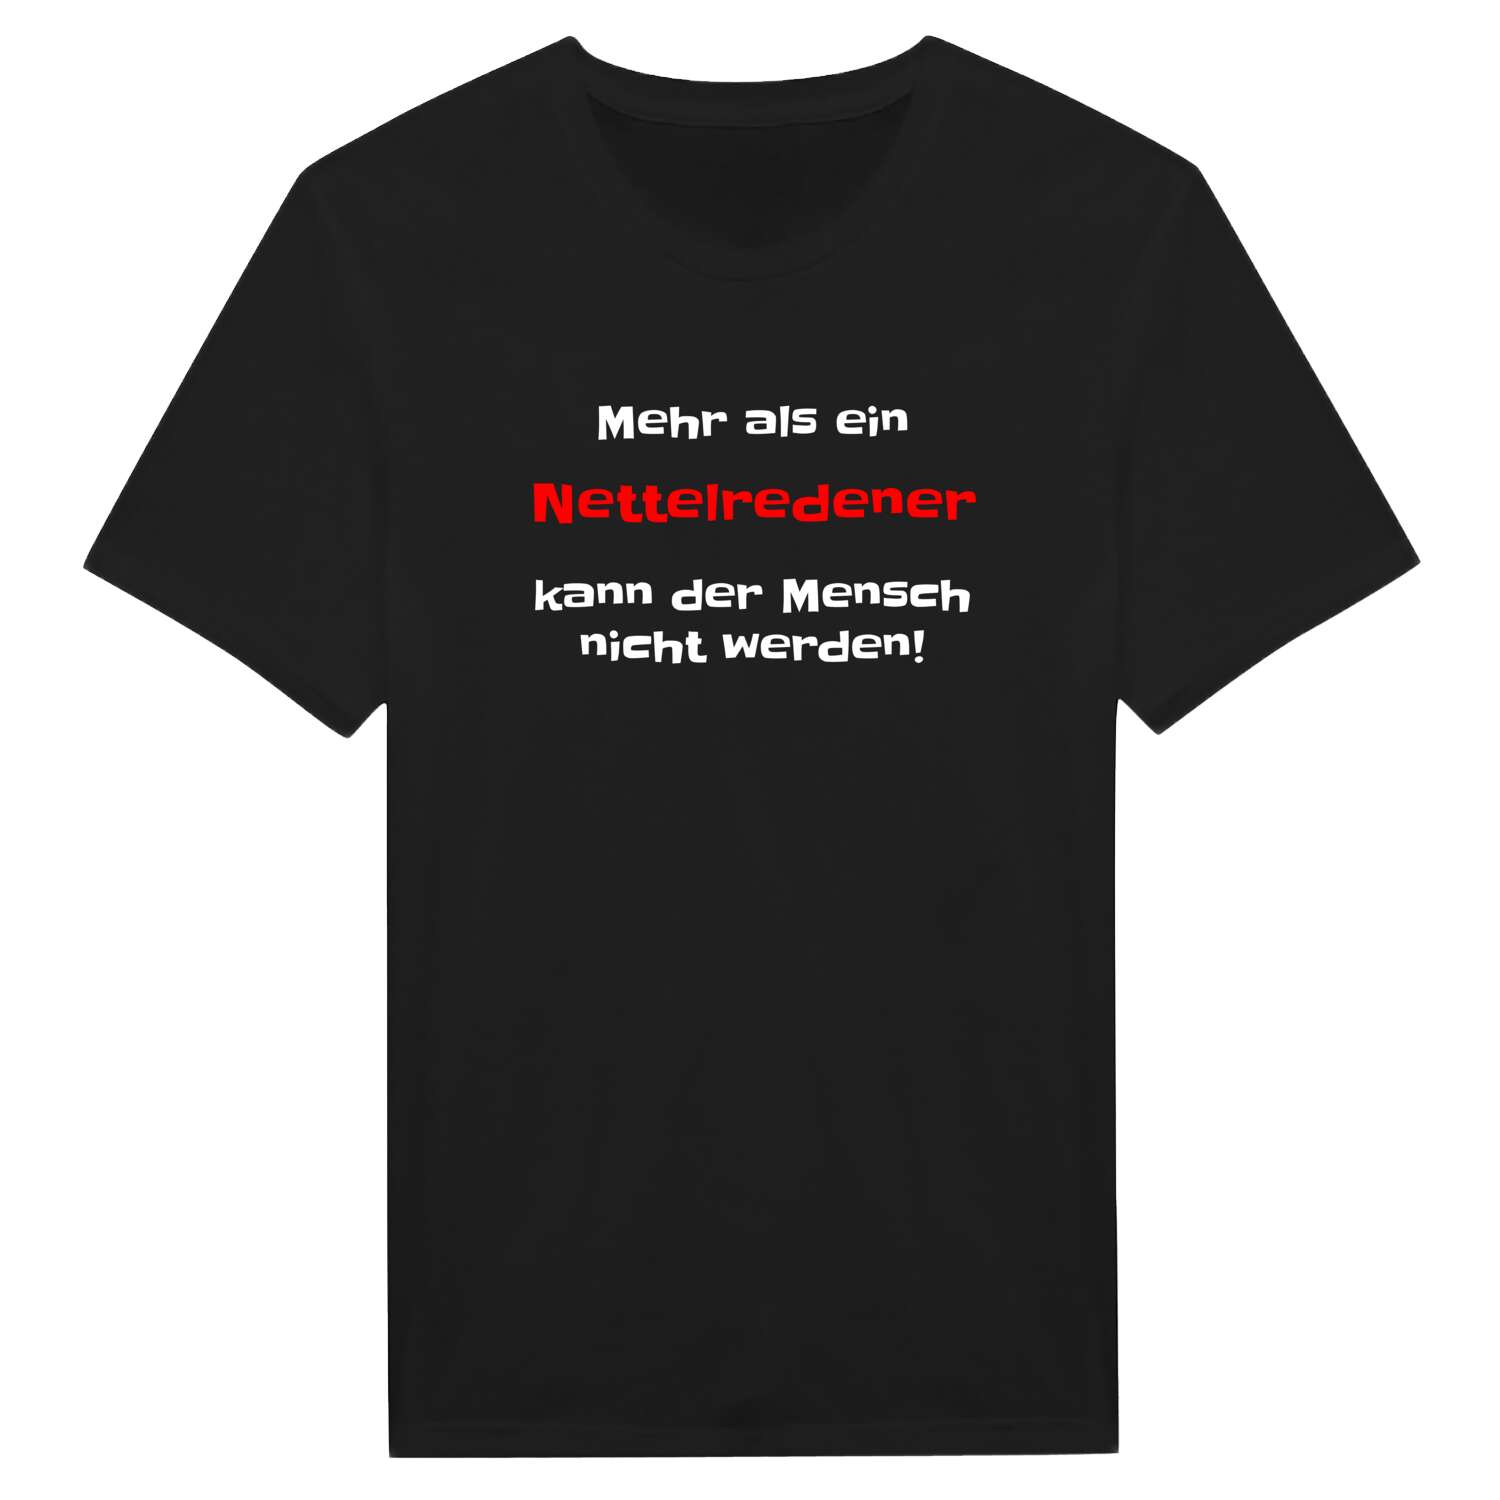 Nettelrede T-Shirt »Mehr als ein«